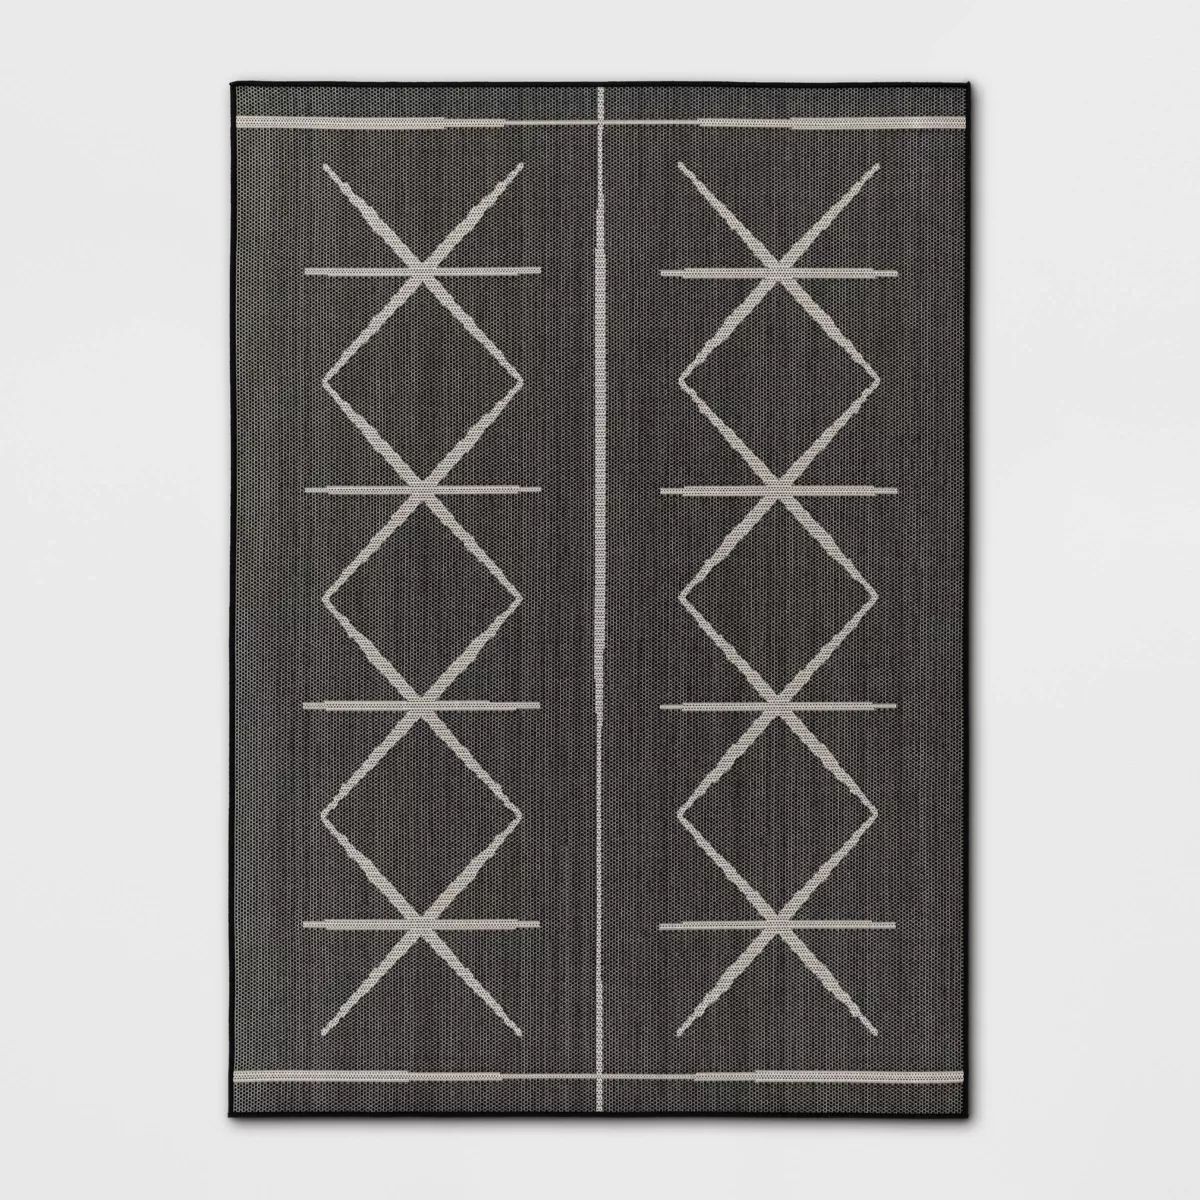 5'3"x7' Modern Crisscross Rectangular Woven Indoor Outdoor Area Rug Black - Threshold™ | Target